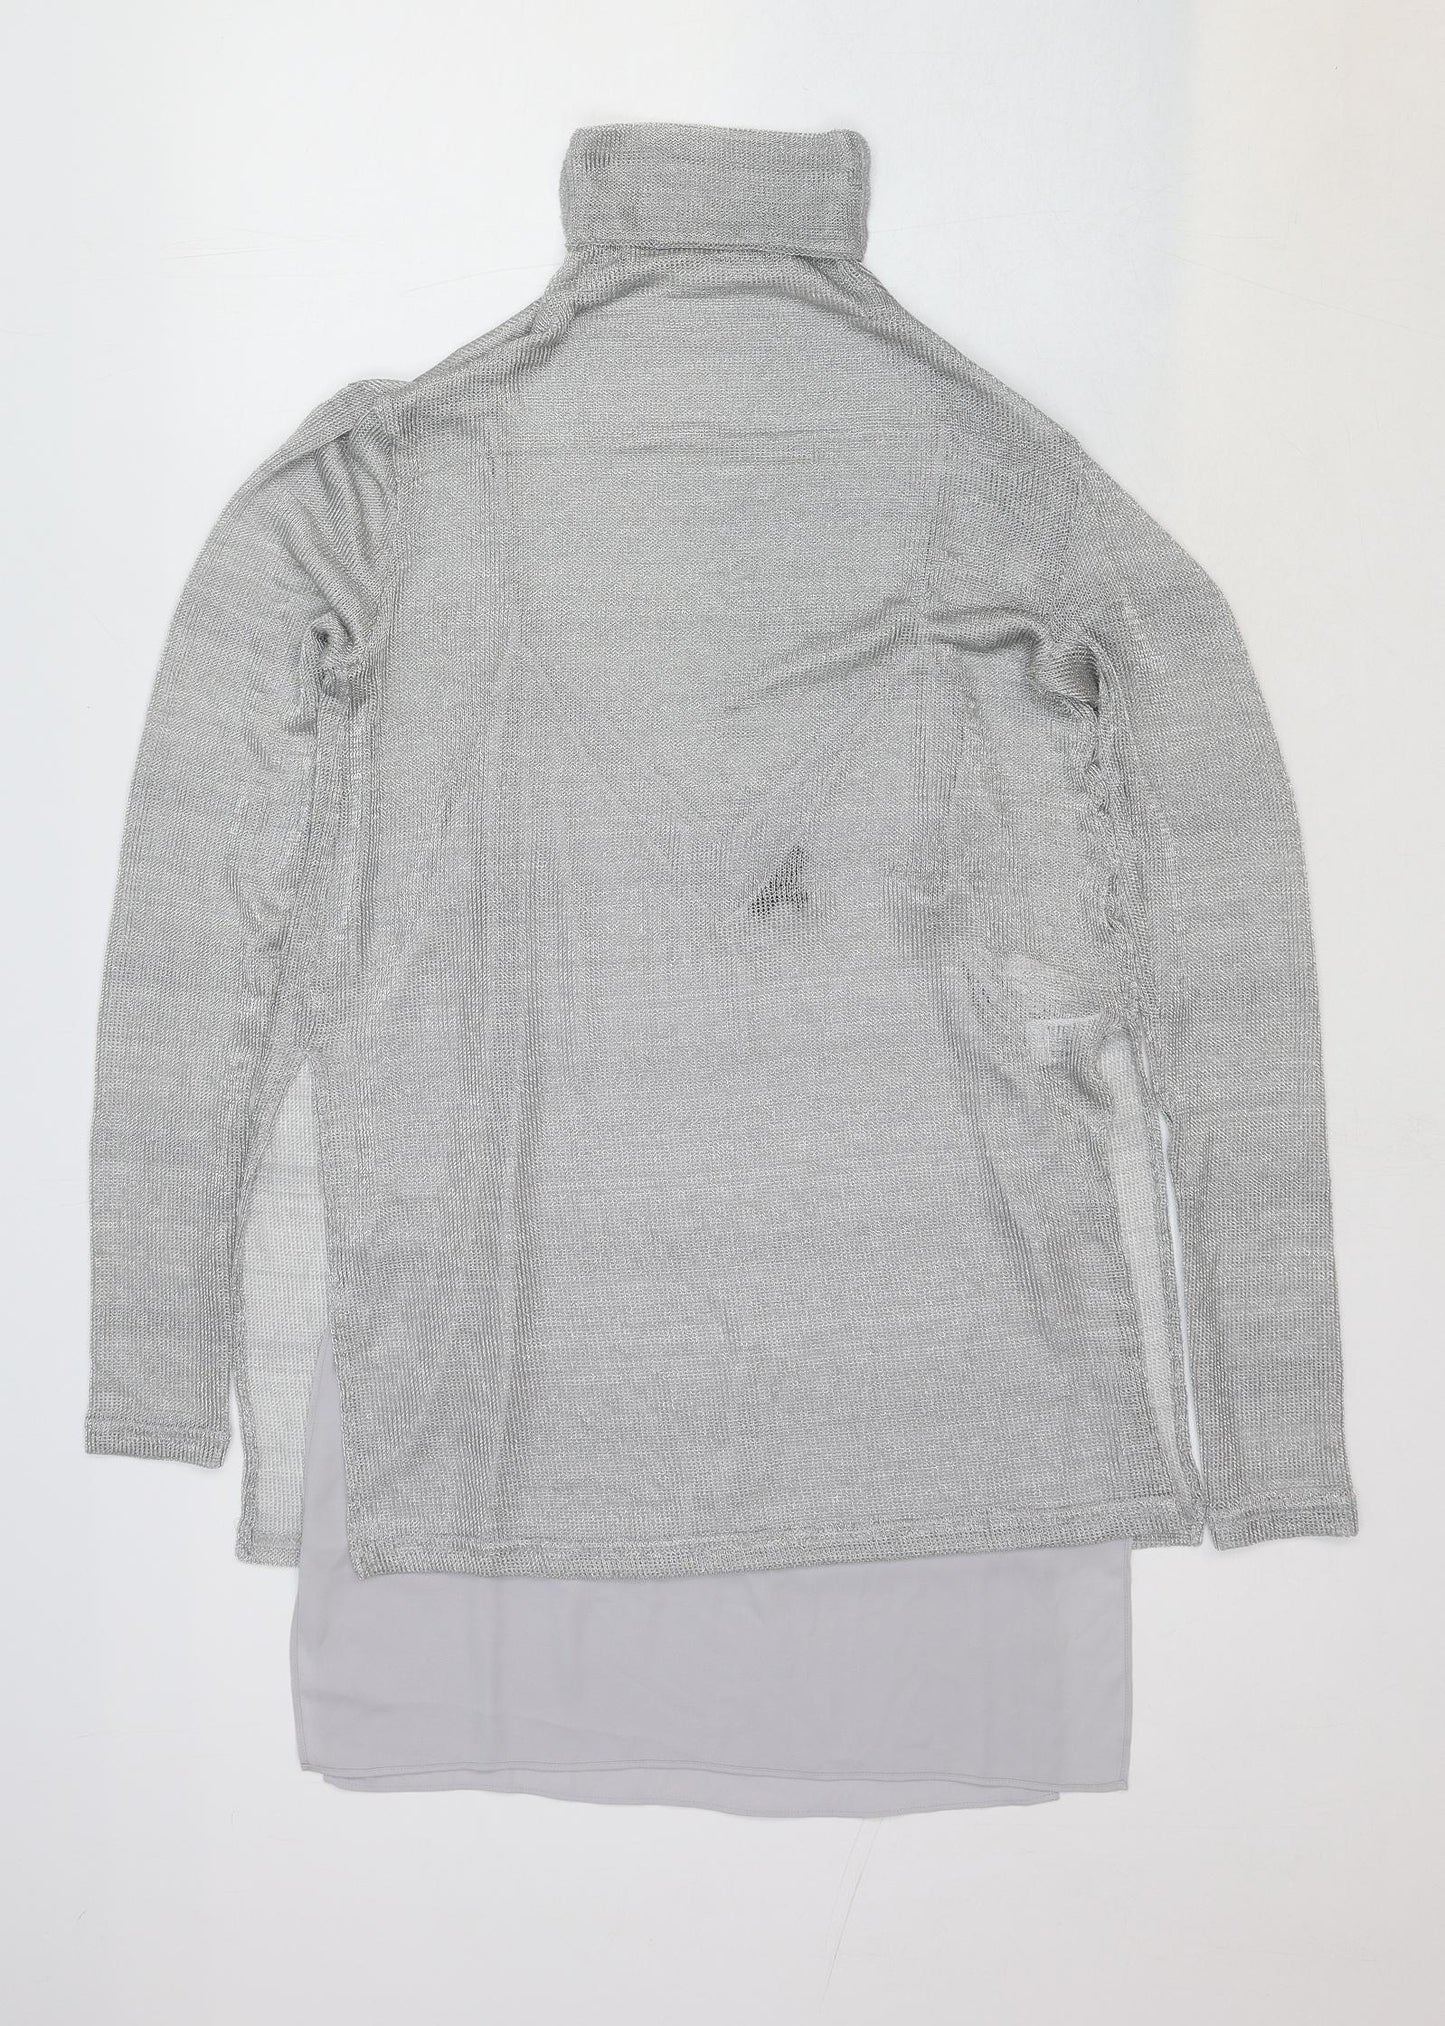 Massimo Dutti Womens Grey Viscose Basic Blouse Size S Roll Neck